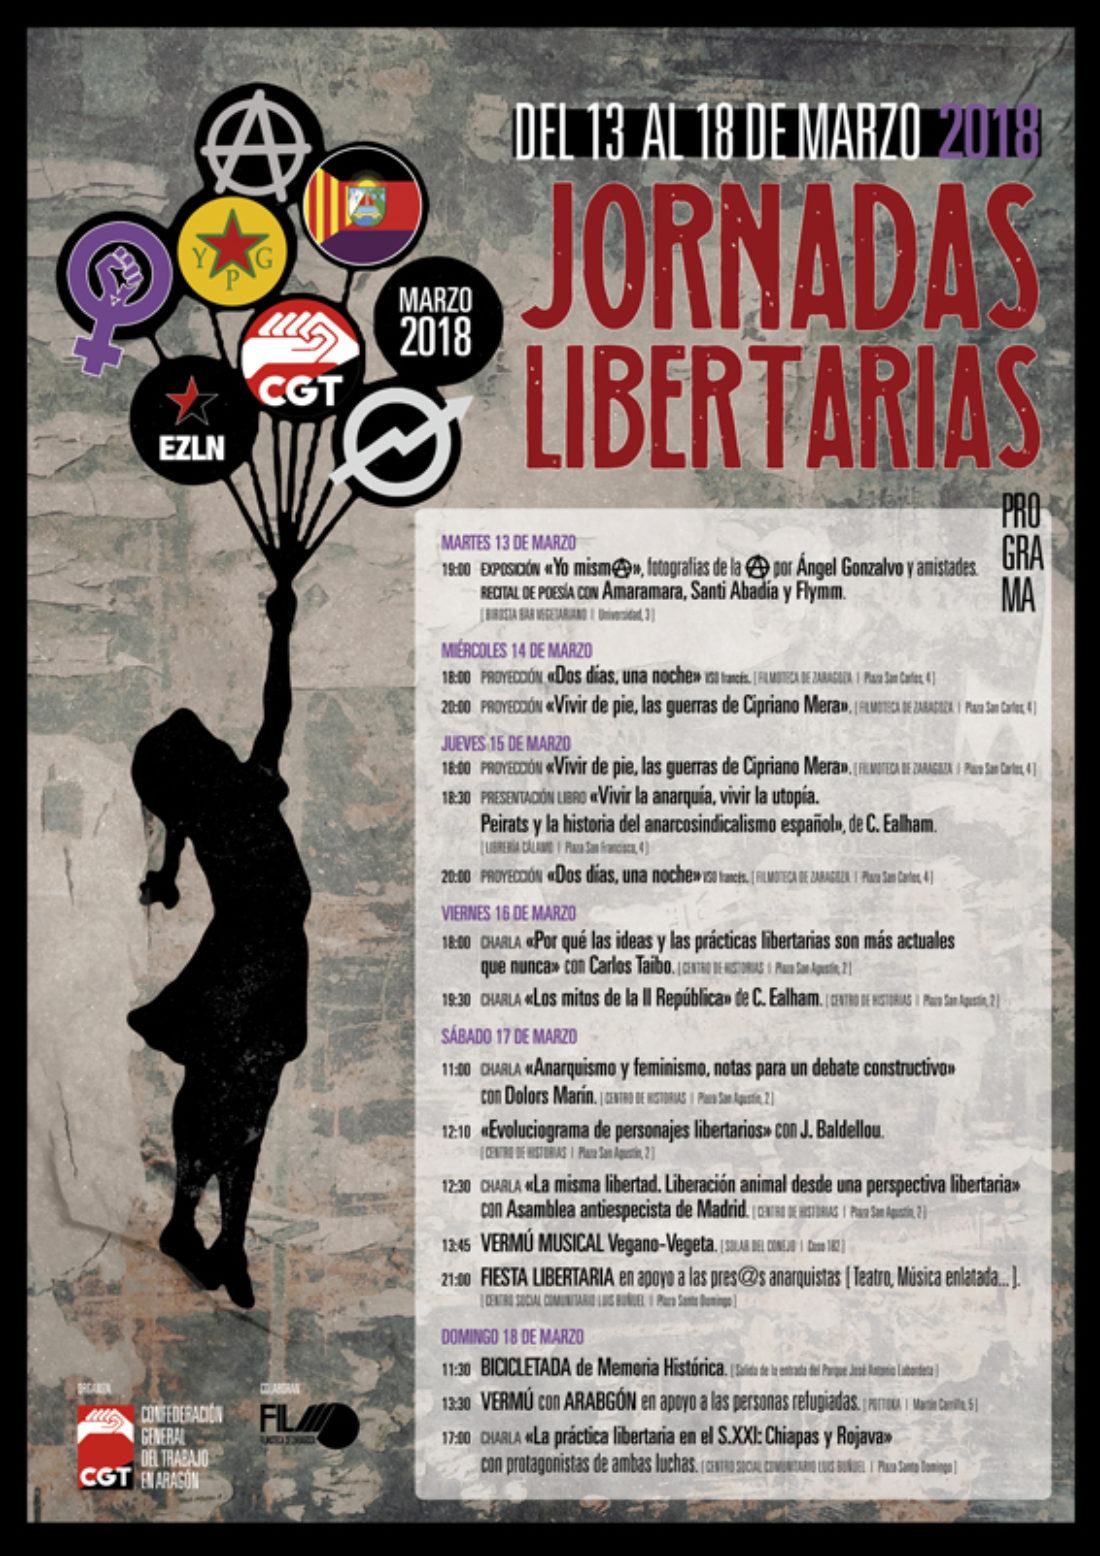 CGT organiza unas jornadas libertarias para conocer la historia y vigencia de La Idea